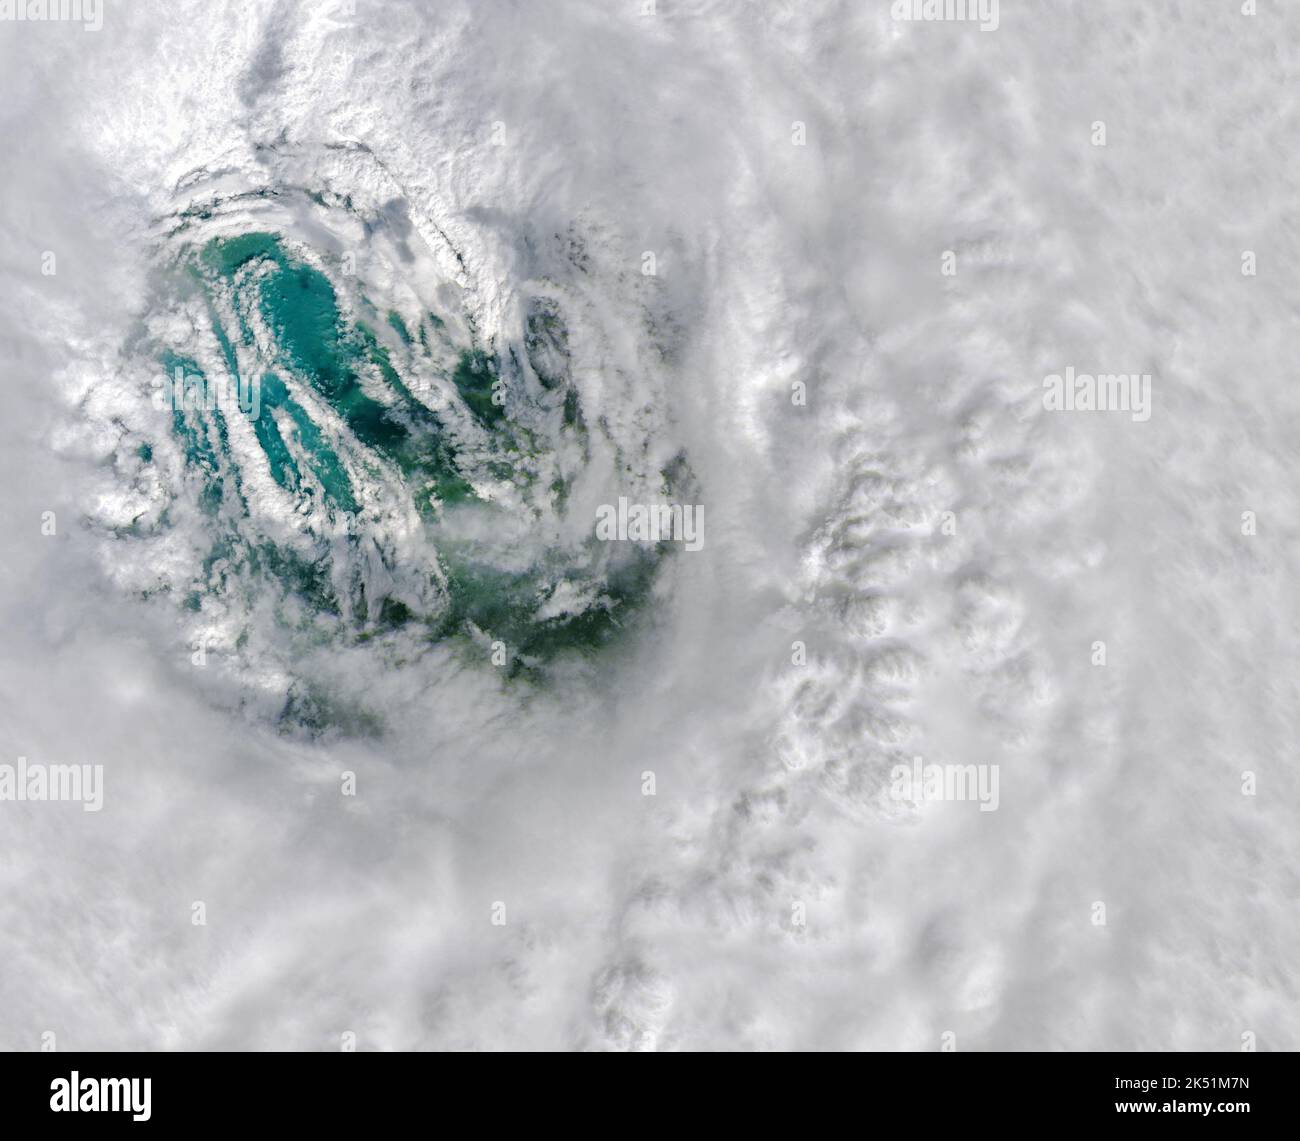 L'Operational Land Imager a bordo del satellite Landsat 8 ha catturato questa immagine a colori naturali dell'occhio dell'uragano Ian il 28 settembre 2022 alle 11:57:00 EDT (15:57:00 UTC), tre ore prima che la tempesta si schiantò nella costa di Caya Costa, Florida. Quando la palpebra di Ian ha fatto il suo approdo, il suo massimo vento sostenuto era di 150 miglia (240 chilometri) all’ora, secondo il National Hurricane Center. Questo è l'equivalente di una tempesta di categoria 4 sulla scala del vento Saffir-Simpson e abbastanza veloce da strappare i tetti fuori casa e schiocco di linee elettriche. L'occhio di un uragano è una zona circolare di tempo giusto al th Foto Stock